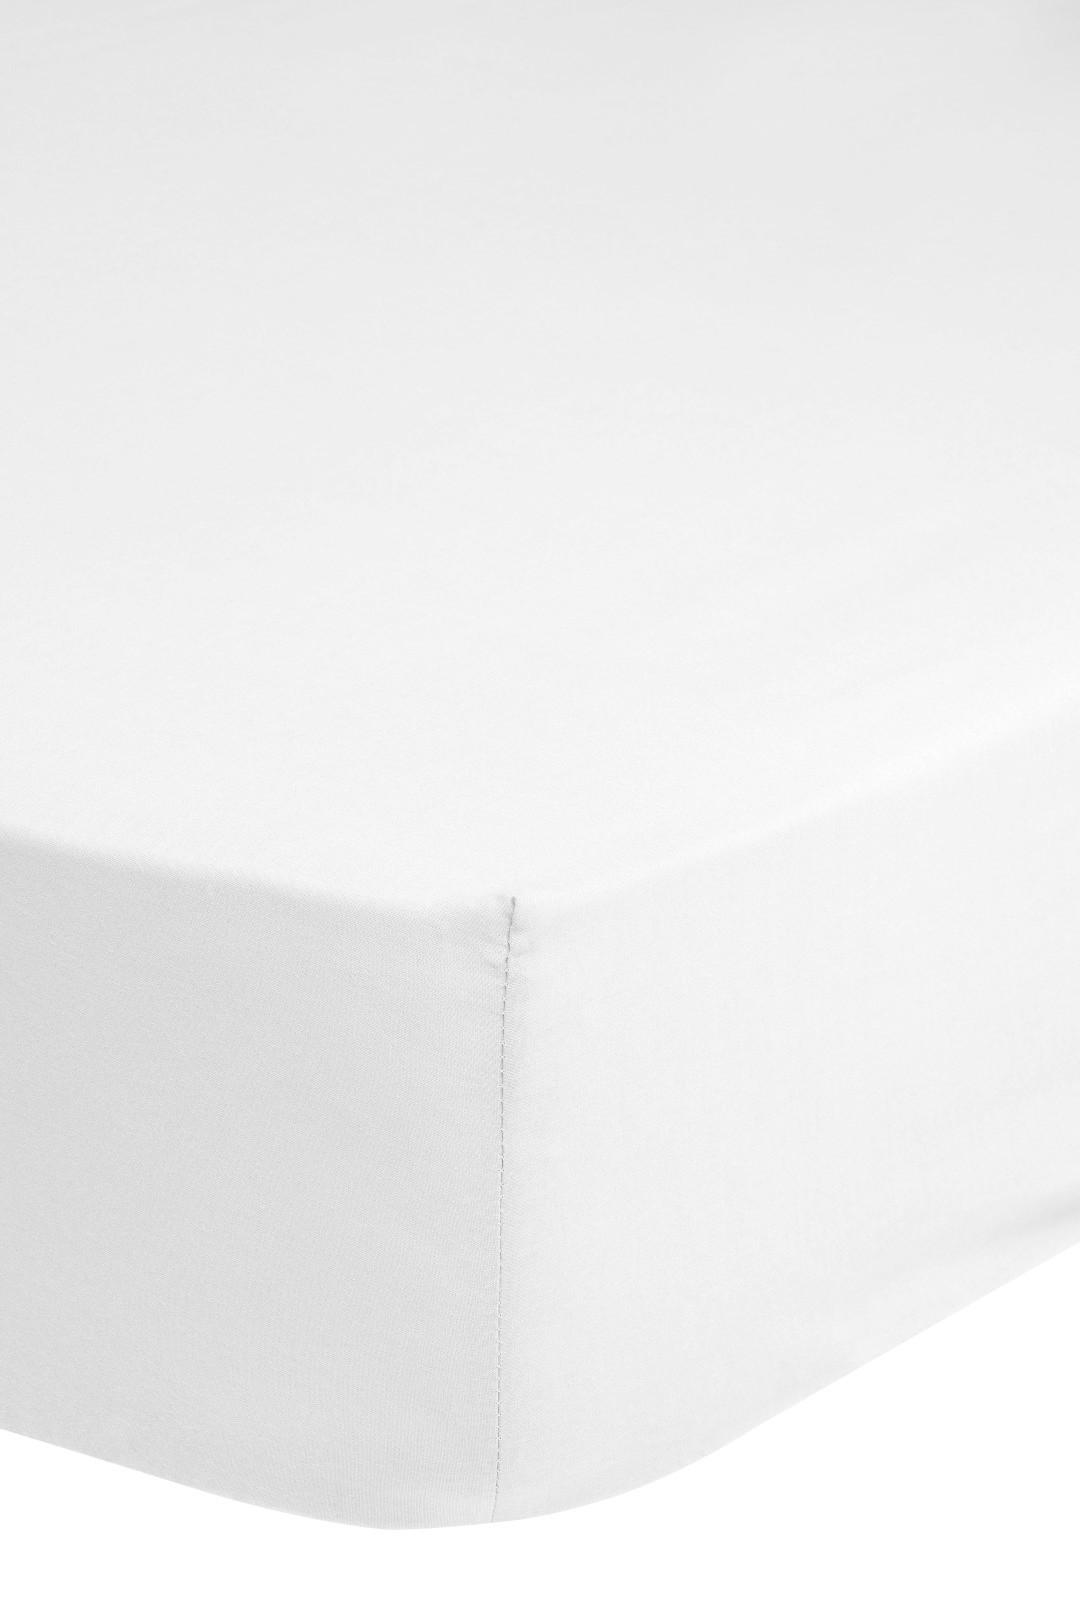 Elastické Prostěradlo Jersey Z Bavlny 90x220cm - bílá, Basics, textil (90/220cm) - MID.YOU